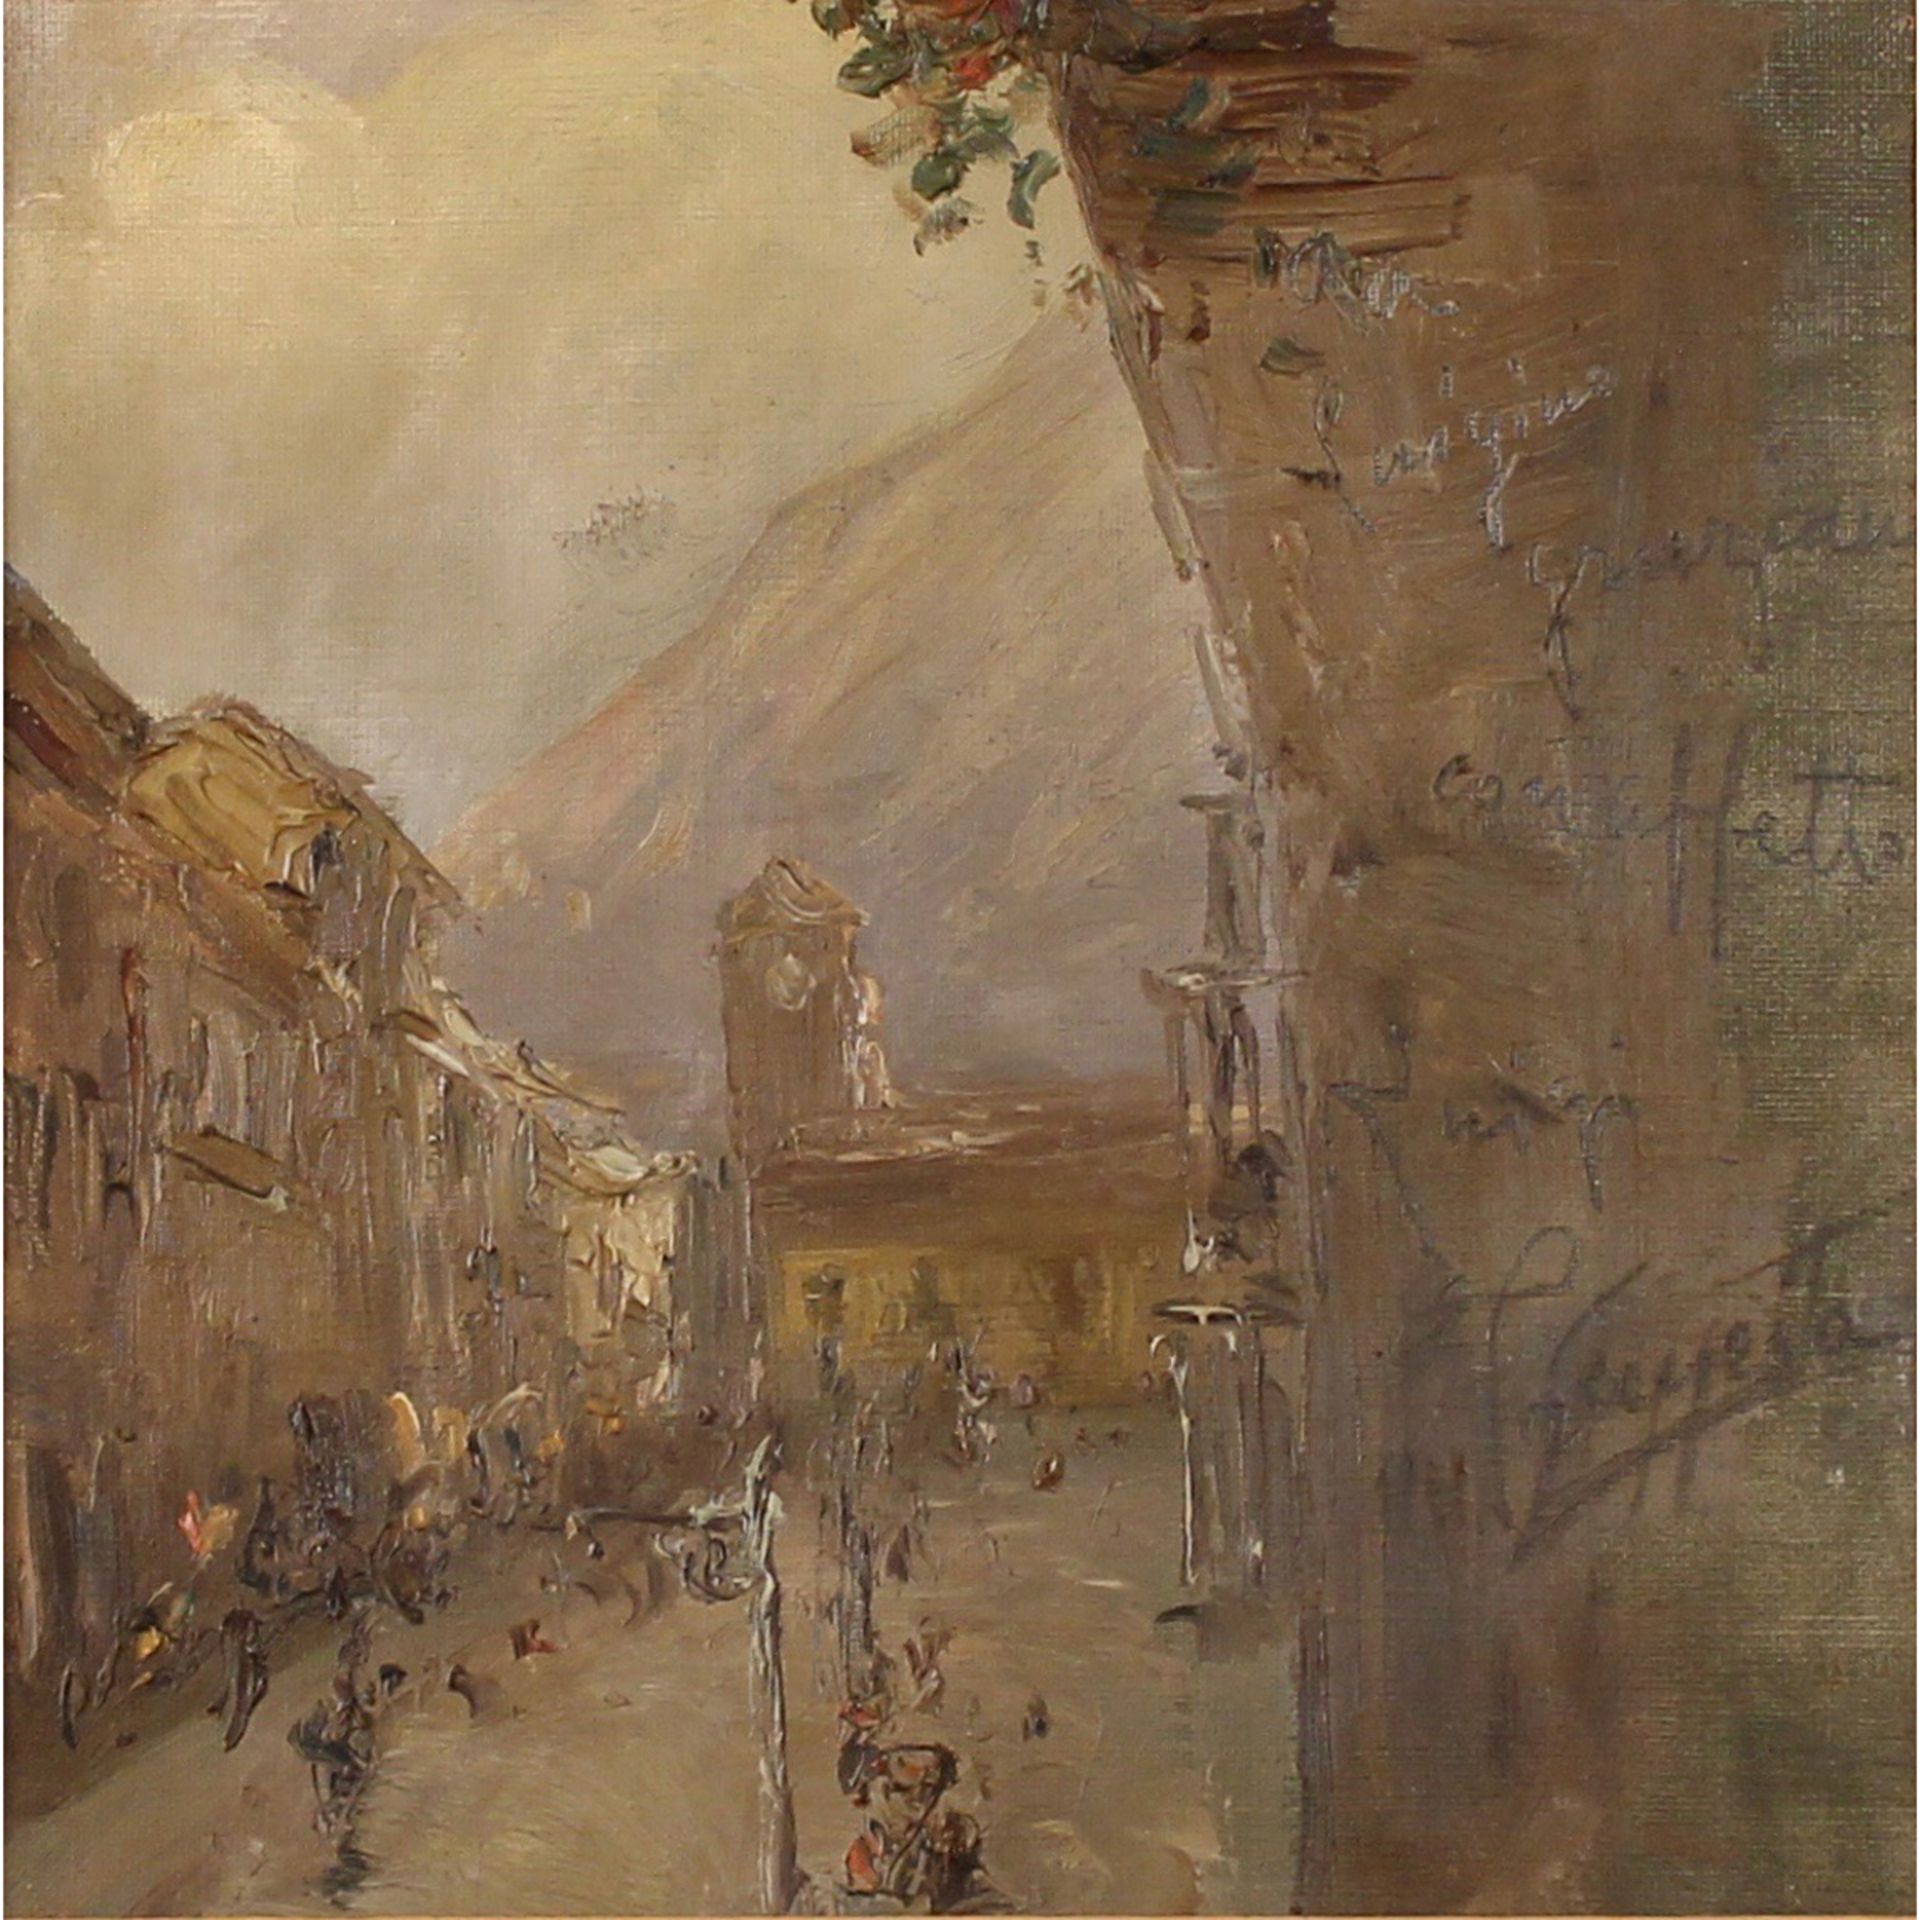 PIETRO SCOPPETTA (1863/1920) "Strada di paese" - "Country road"